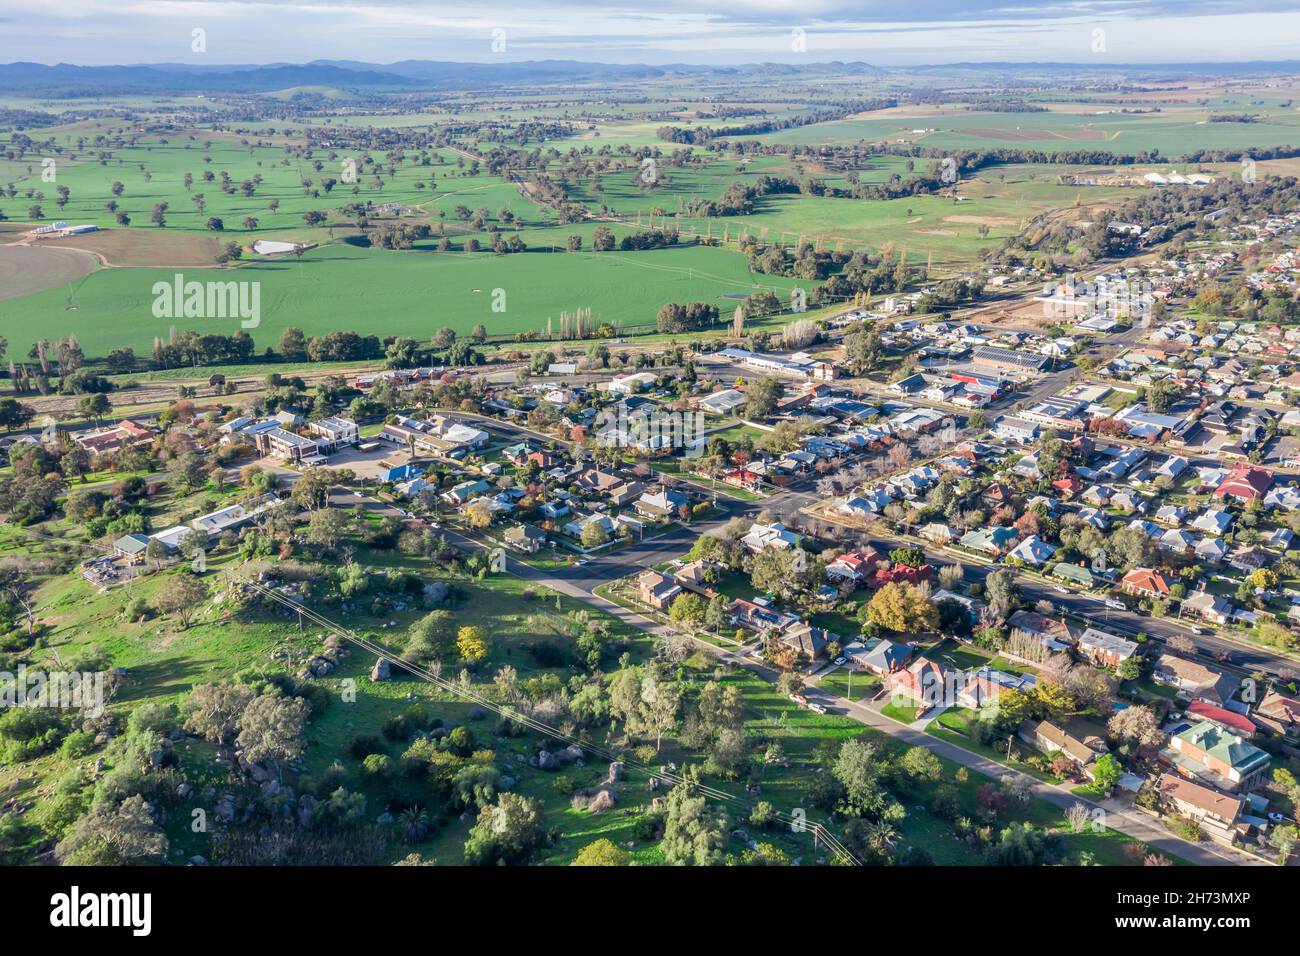 Veduta aerea della cittadina rurale di Cowra nel centro ovest del NSW Australia. Questa città è circondata da terreni agricoli di prima qualità. Foto Stock